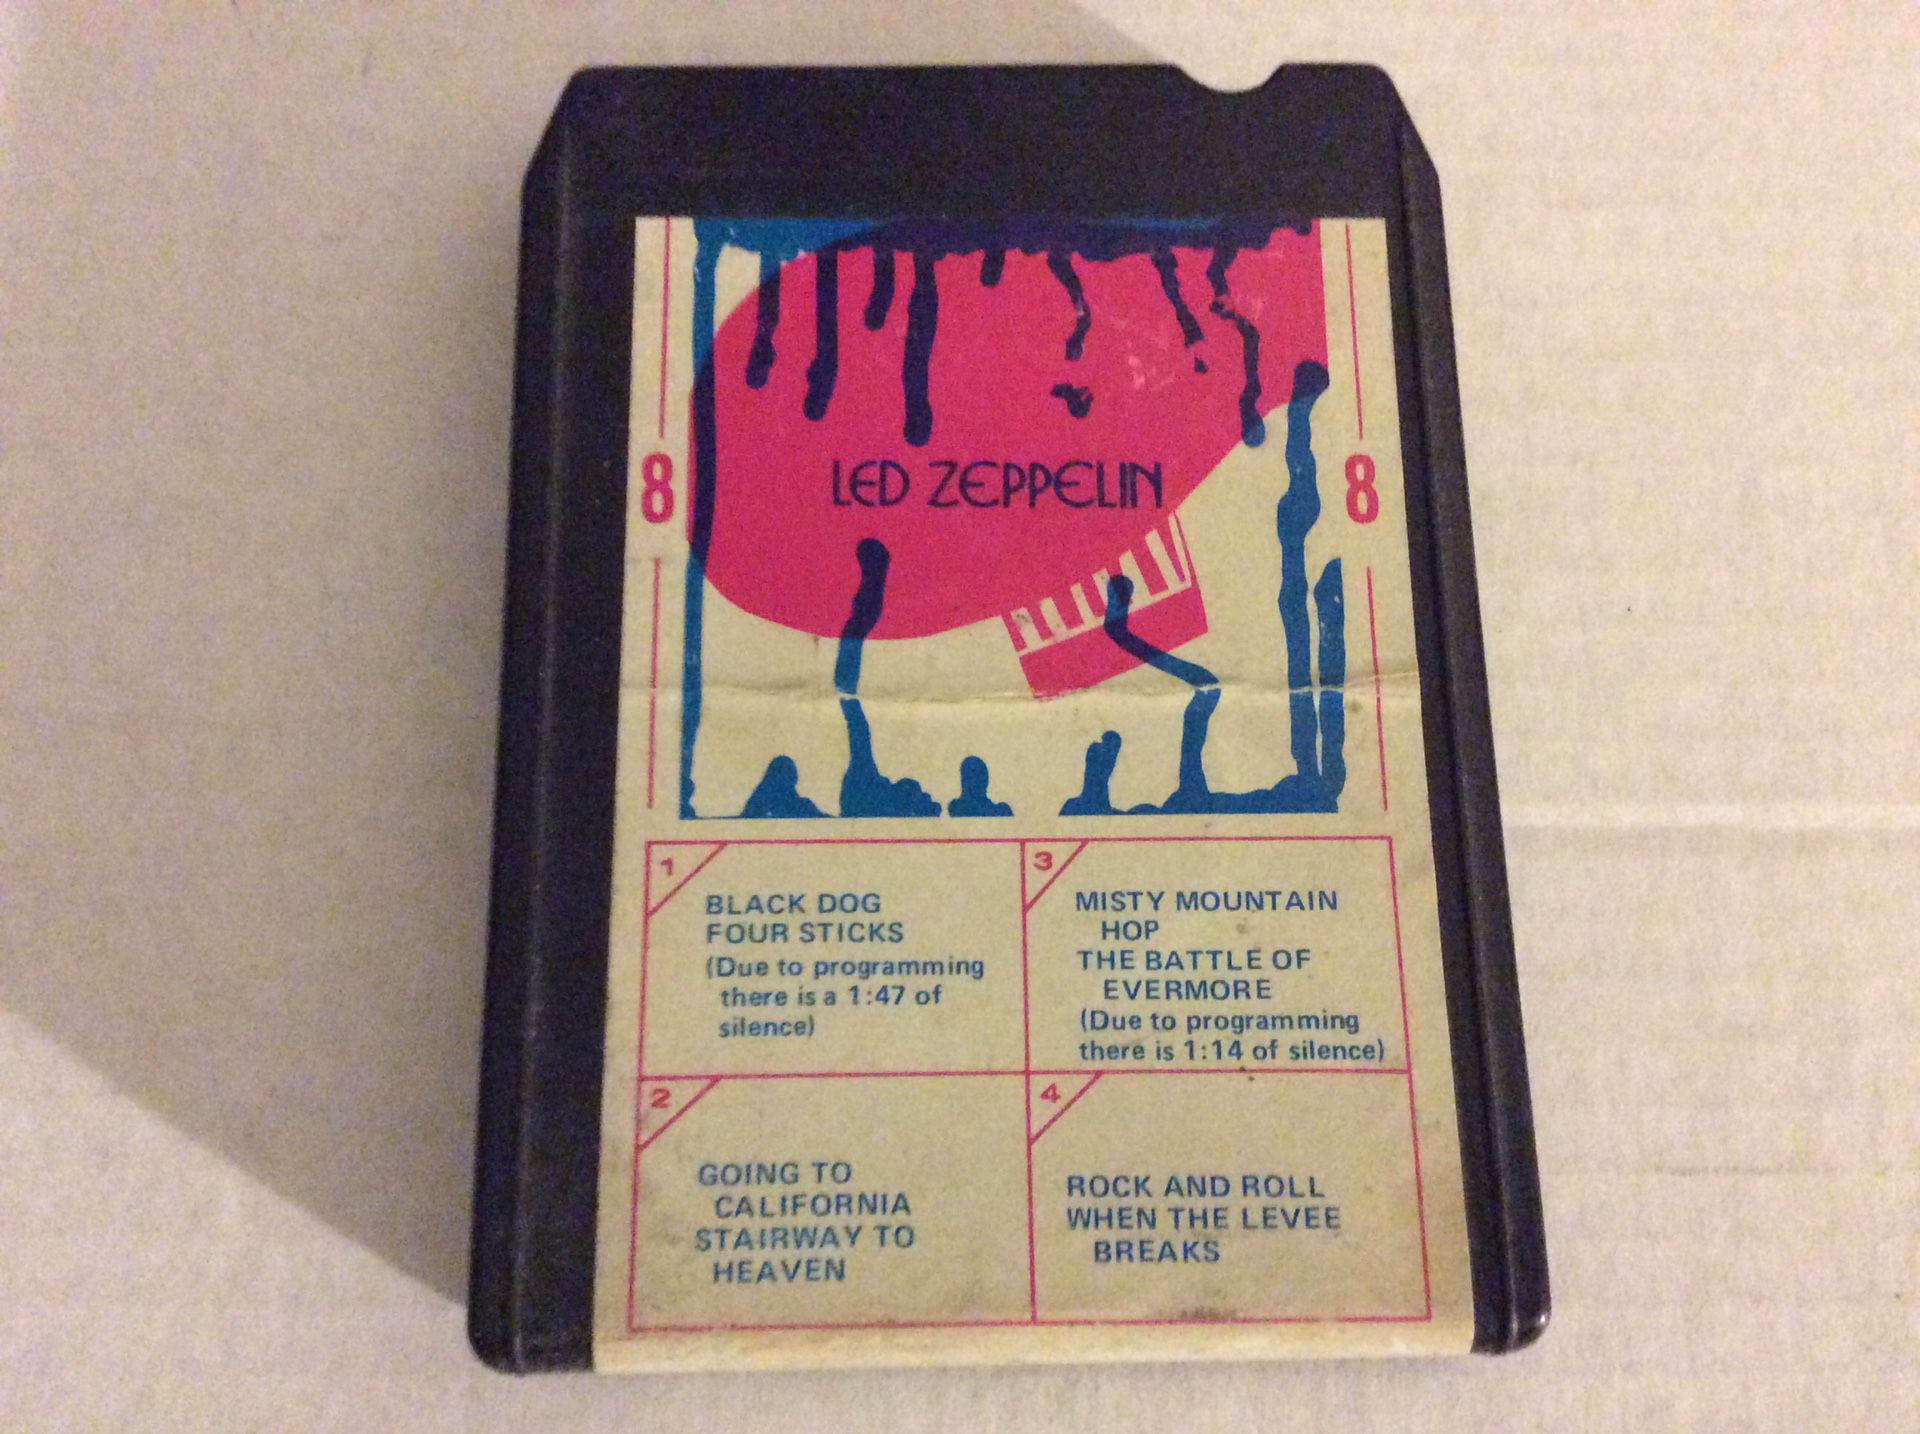 Led Zeppelin 8 track eight track cassette